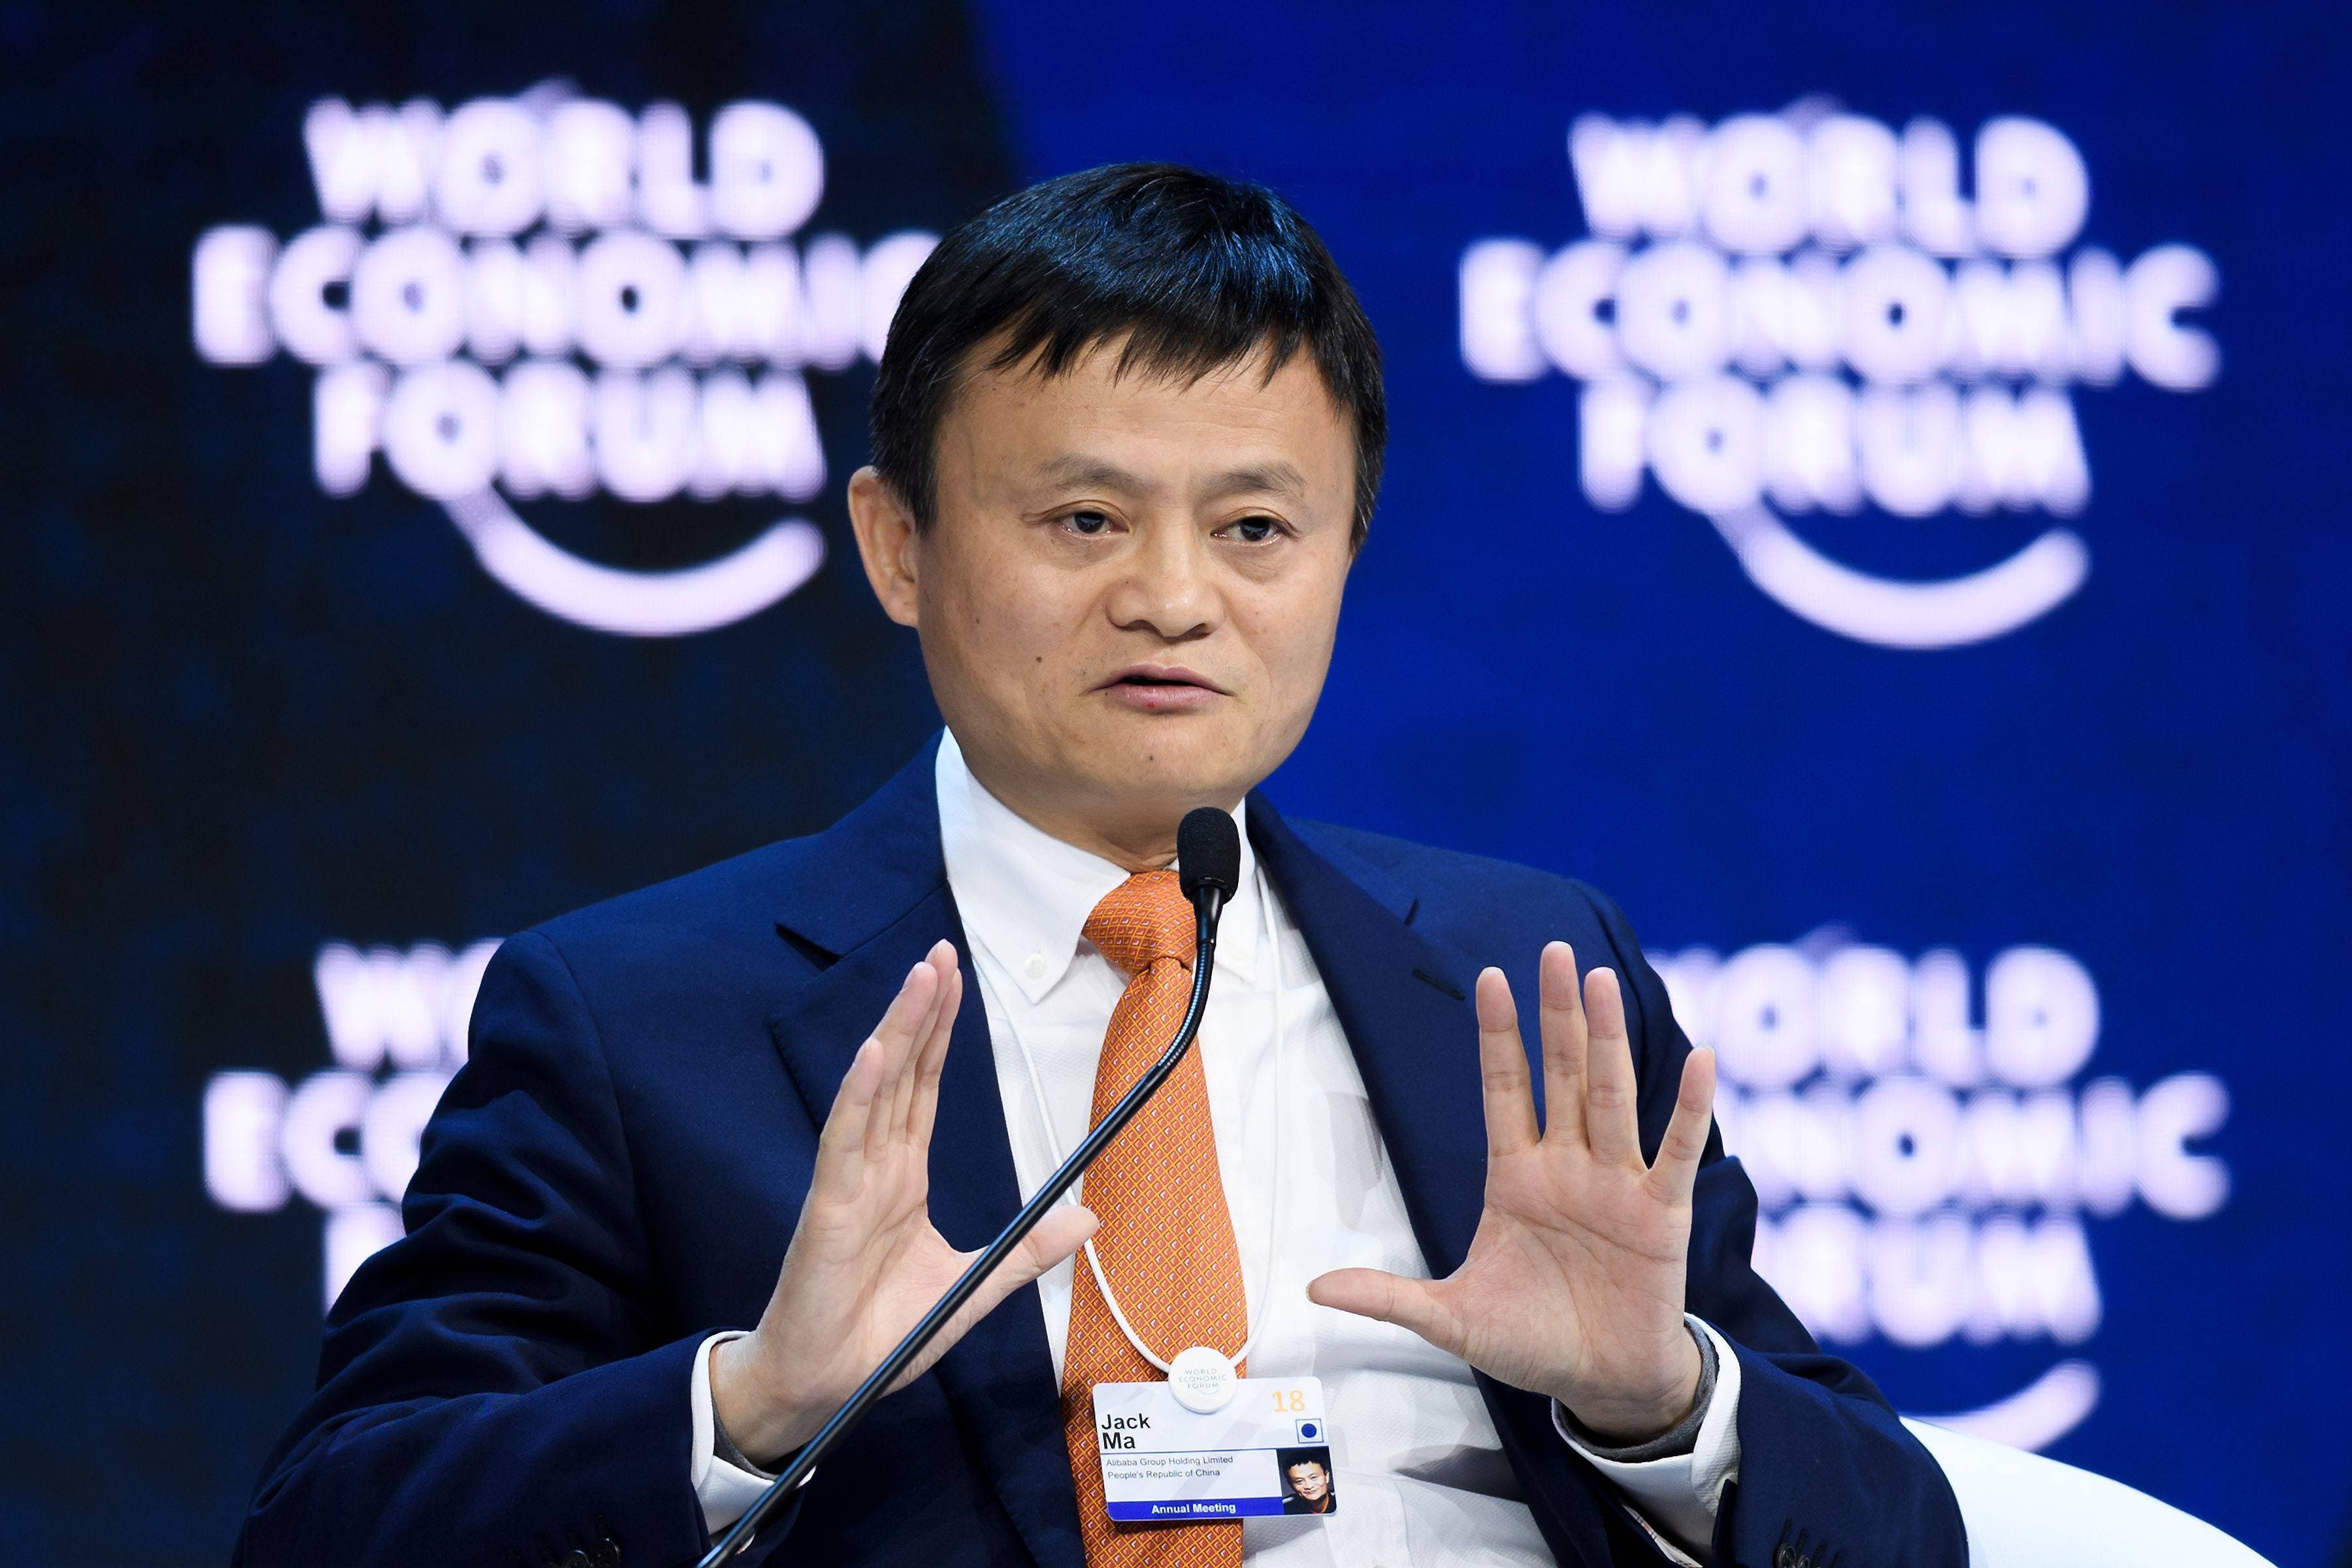 El fundador del gigante de internet Alibaba insta a no utilizar el comercio como un “arma de guerra»